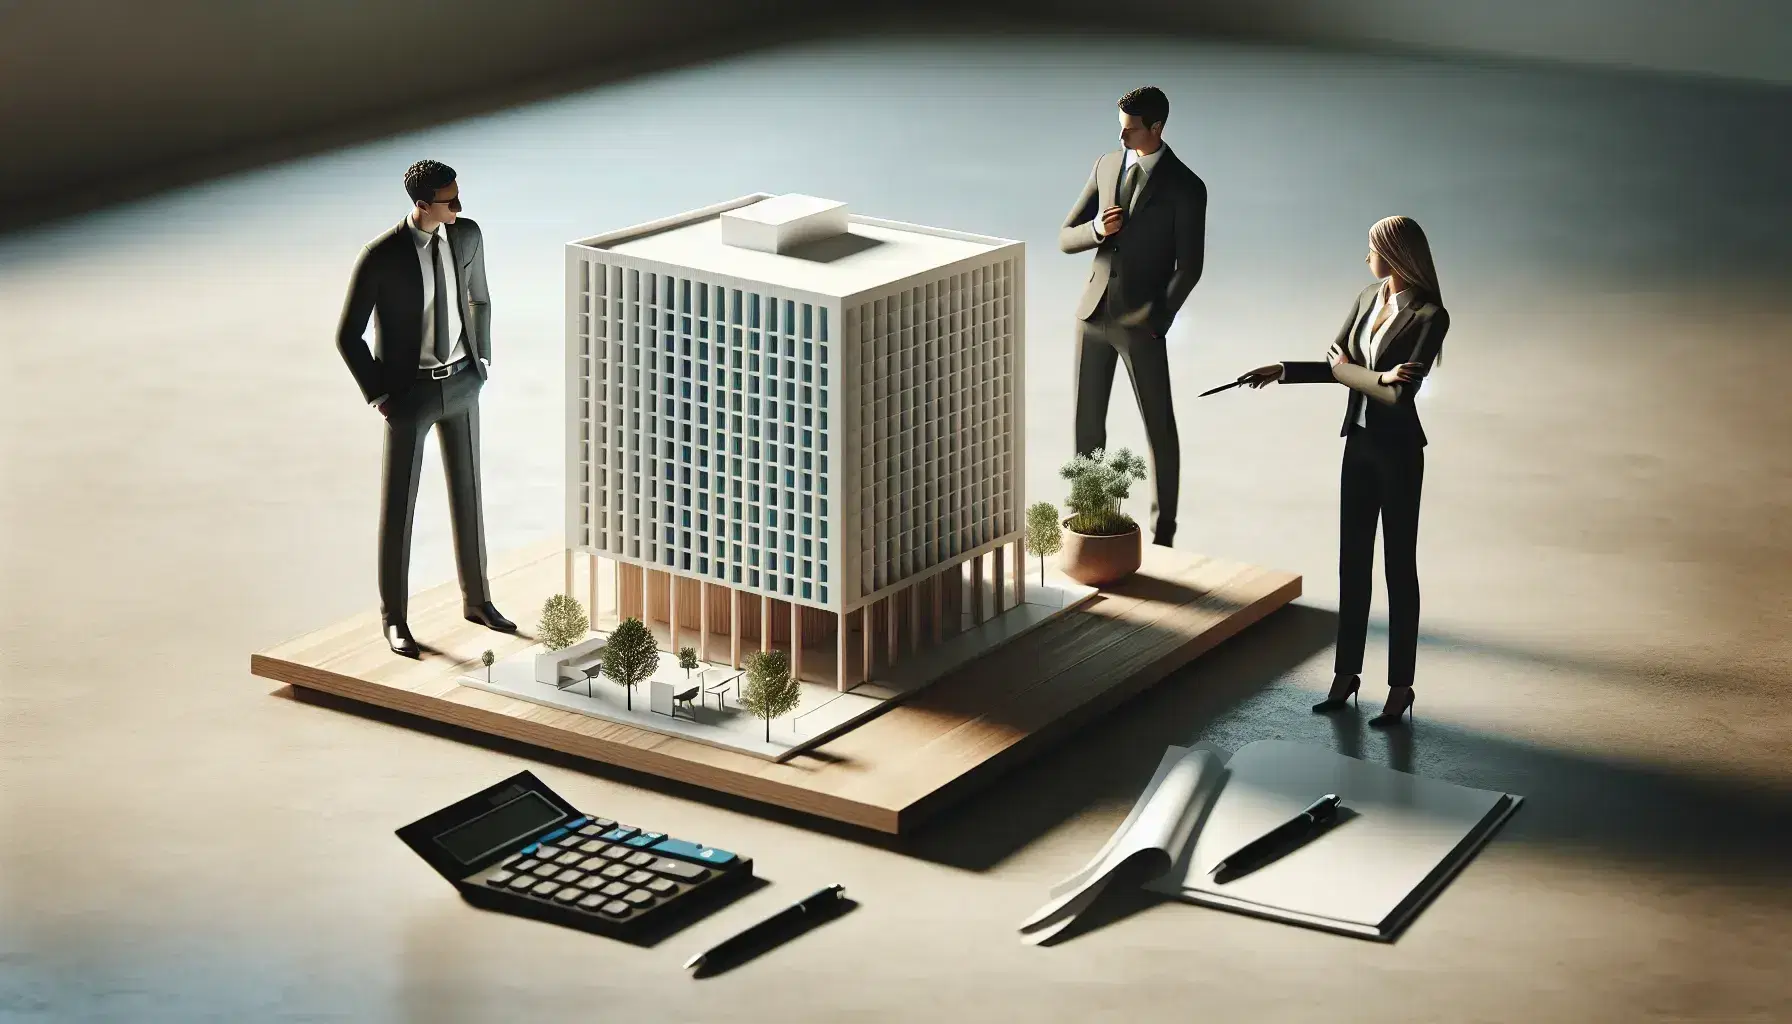 Grupo de tres profesionales analizando maqueta de edificio de oficinas sobre mesa de madera, con calculadora y bolígrafos al lado, en ambiente de trabajo iluminado.